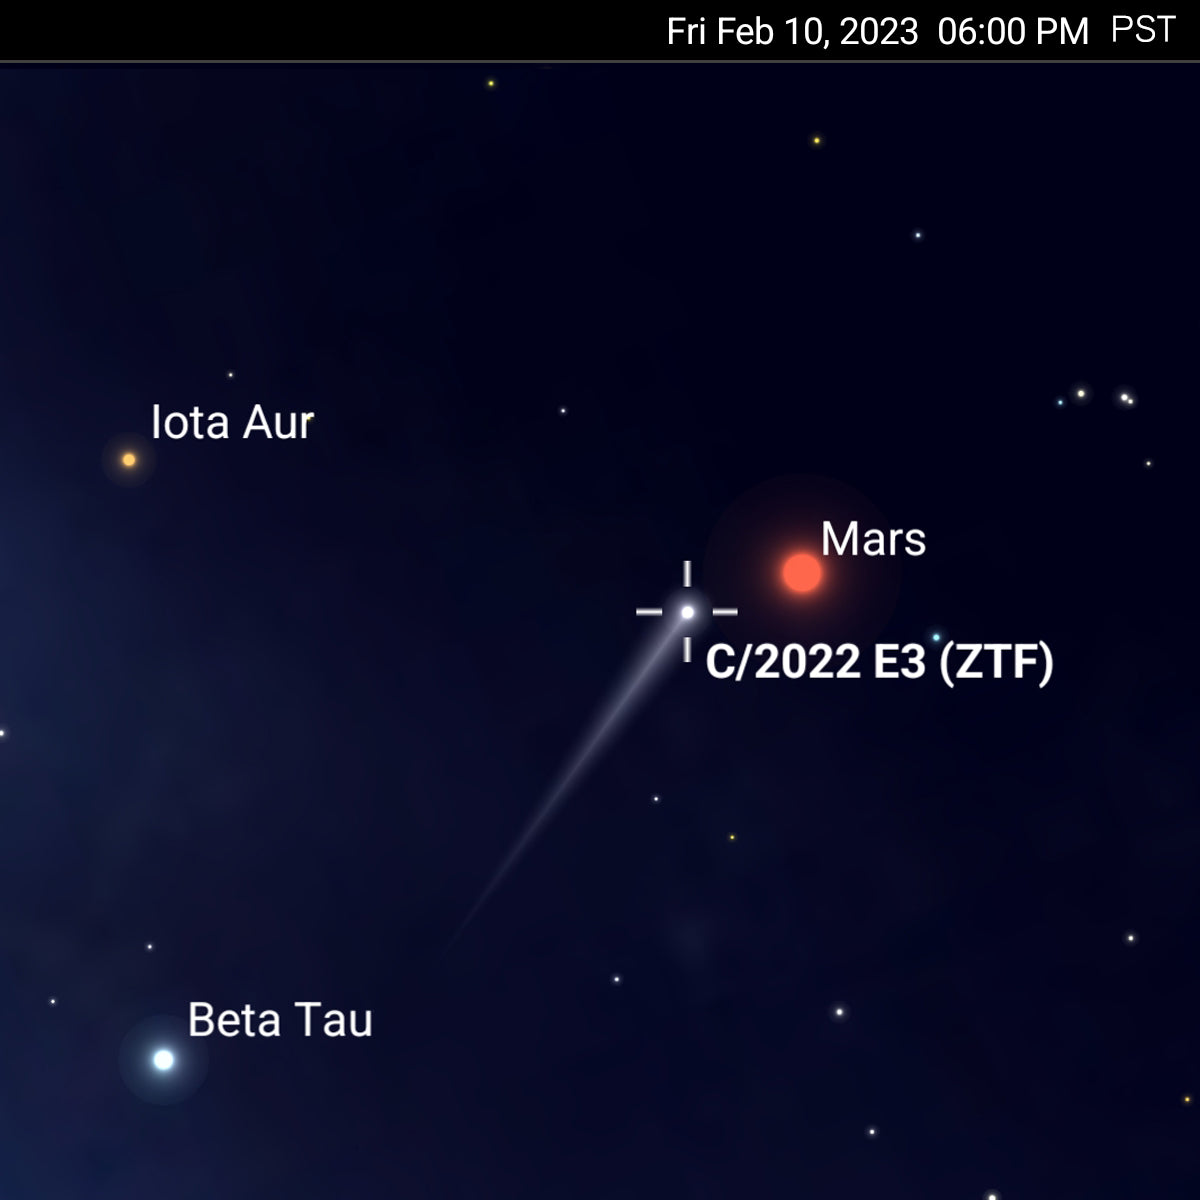 Comet-Watch-C2022-E3-ZTF- Enter Mars (Feb 10)